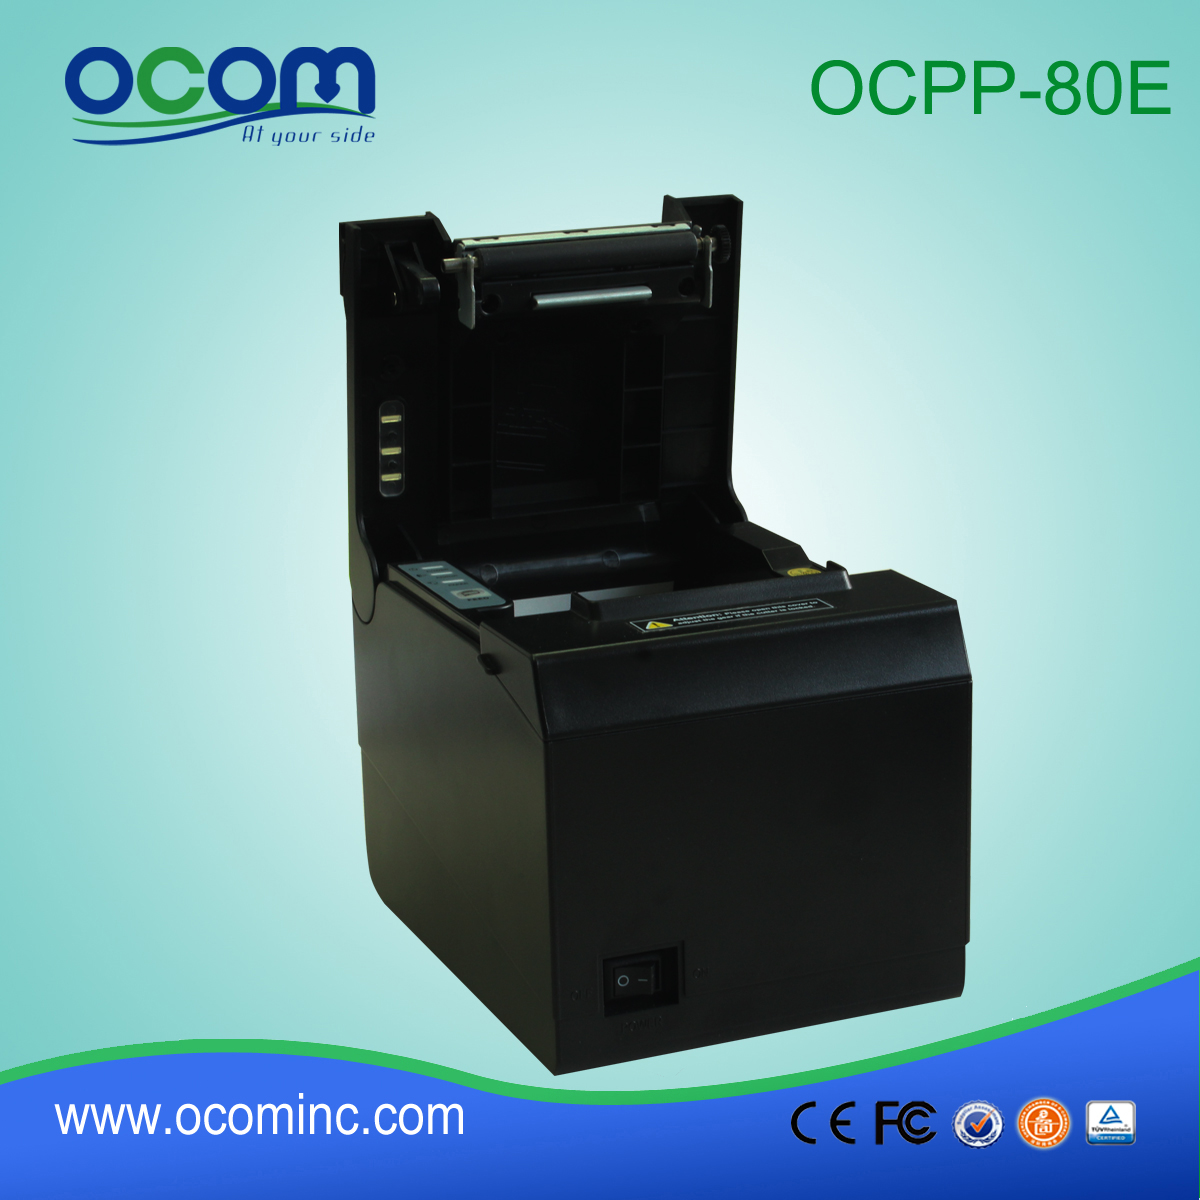 OCPP-80E USB / równoległe auto frez 80mm drukarka termiczna tani odbiór pos